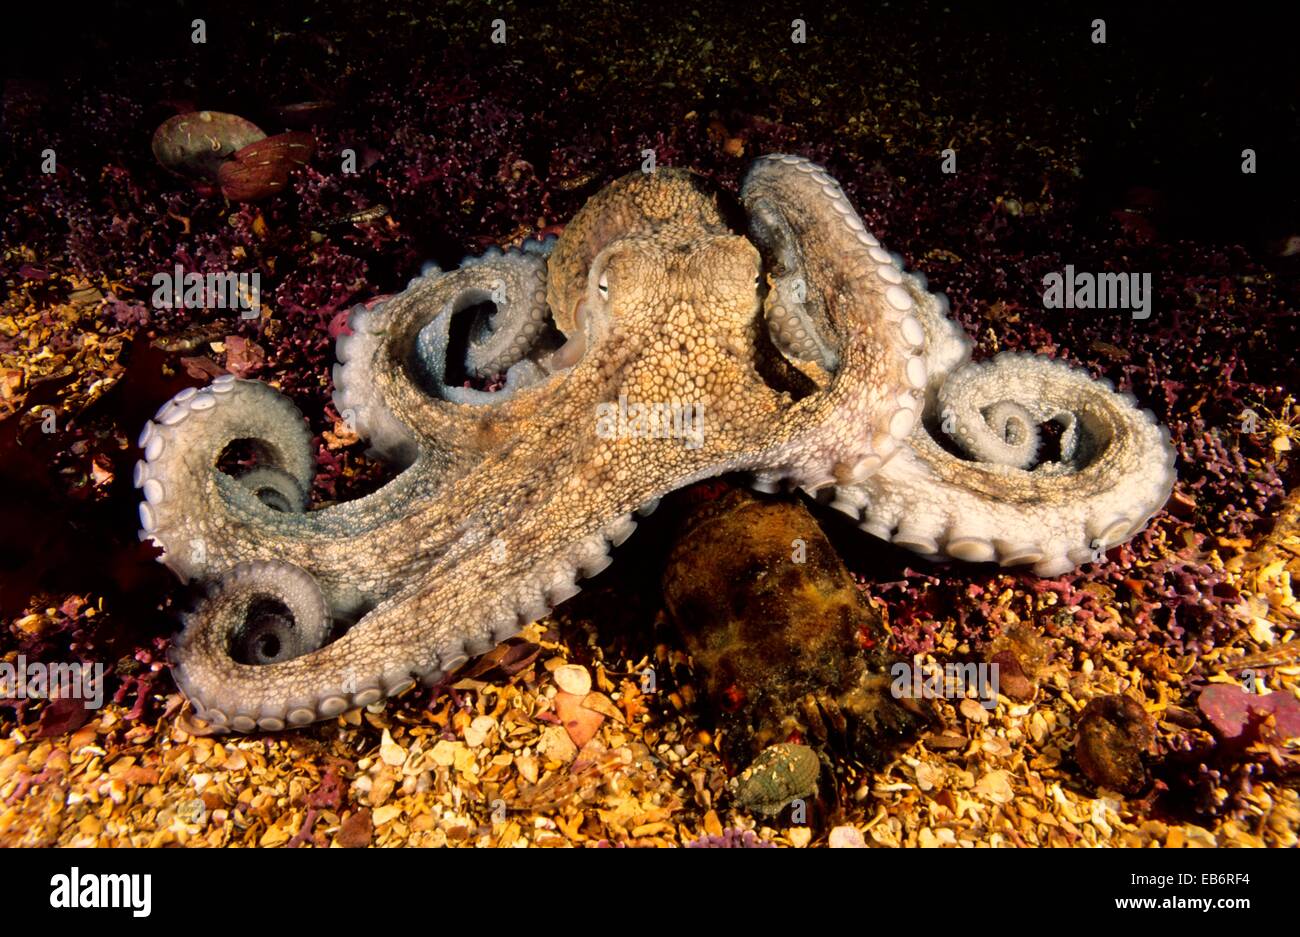 Pulpo Octopus vulgaris devorando poco Cape Town Scyllarus arctus langosta del Atlántico oriental, Galicia, España Foto de stock